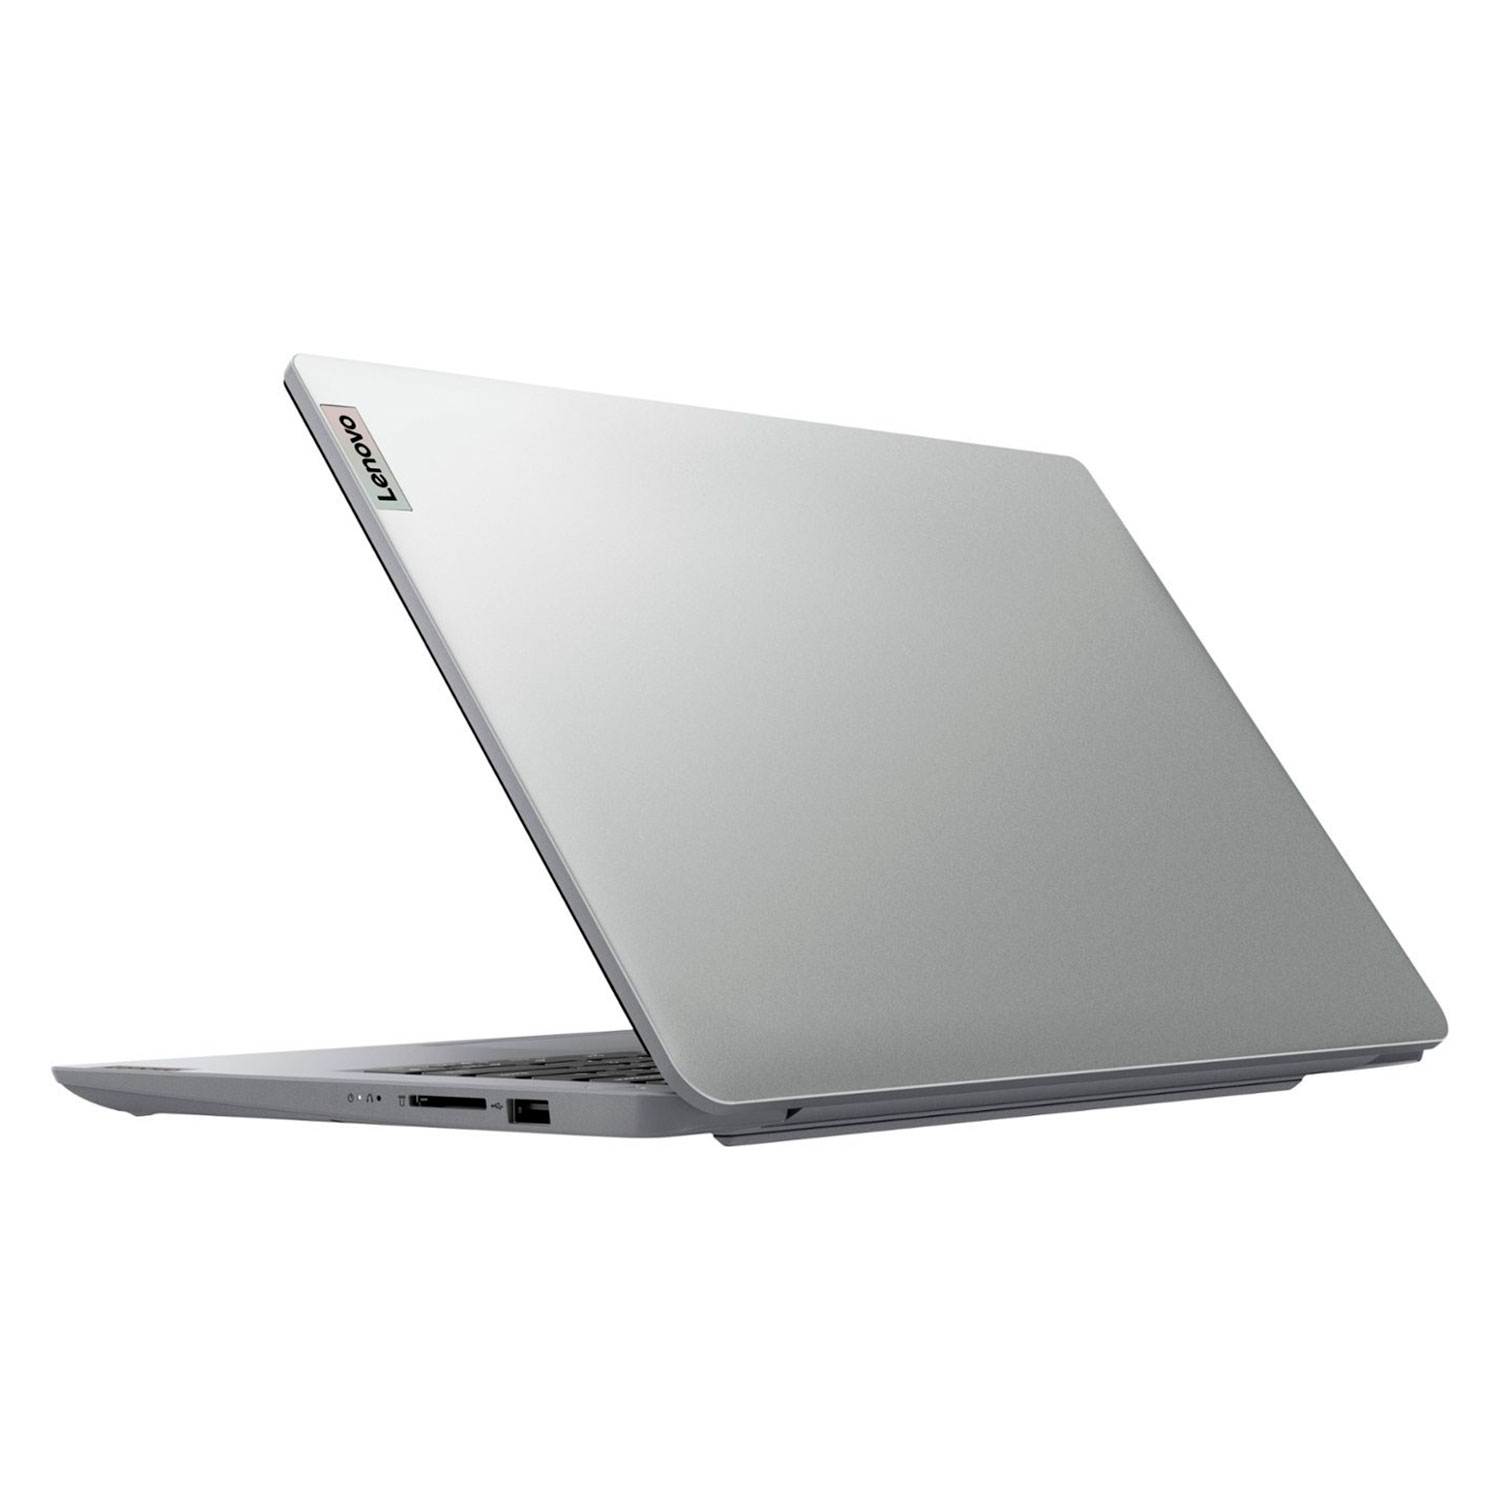 Notebook Lenovo IdeaPad 1 82V60022US 14" Intel Celeron N4020 64GB EMMC 4GB EAM - Cinza